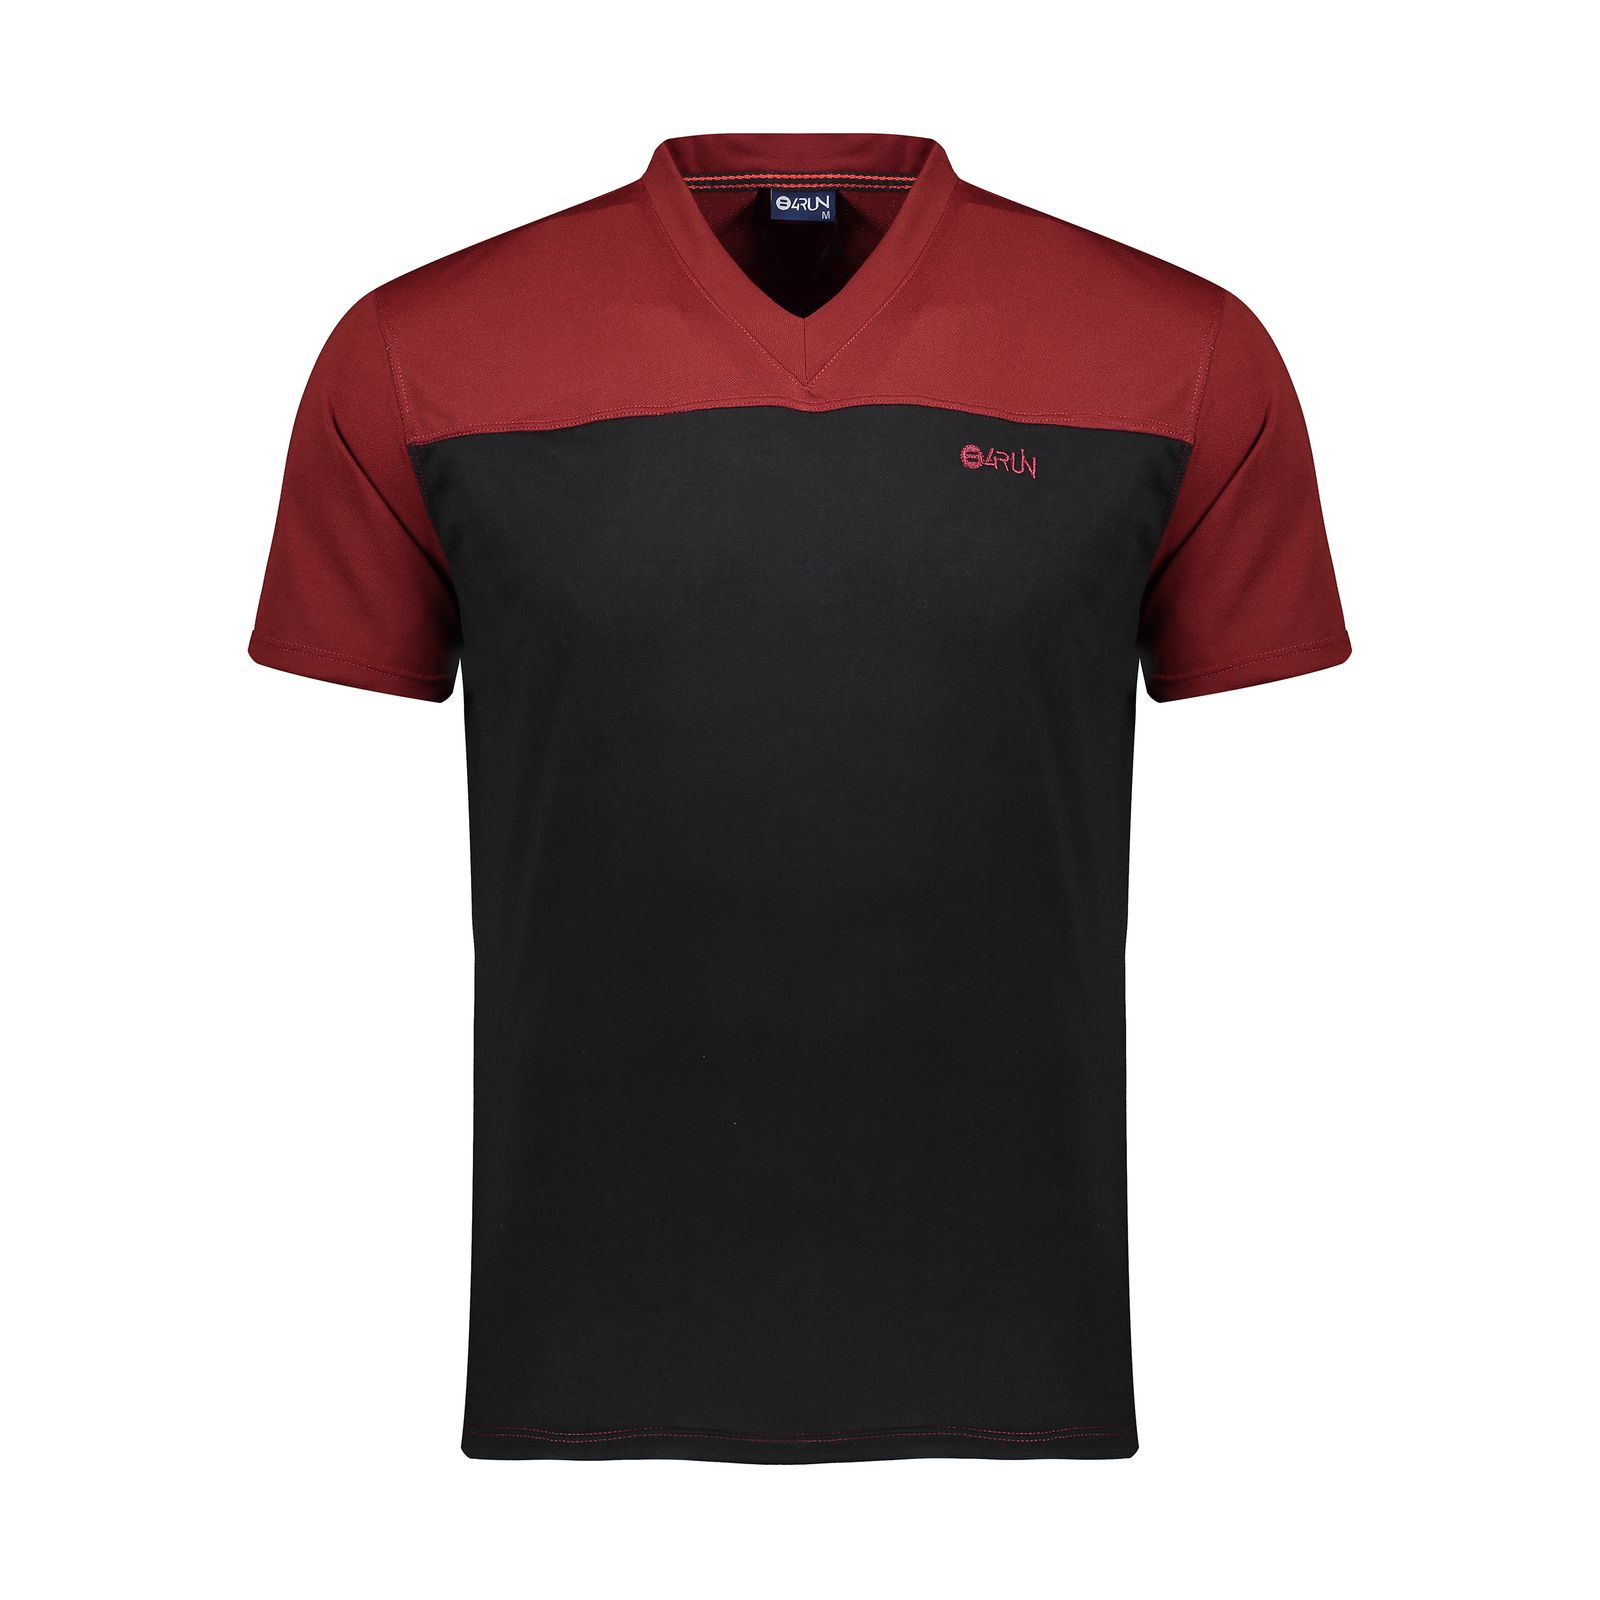 تی شرت ورزشی مردانه بی فور ران مدل 980317-7499 - قرمز - مشکی - 1